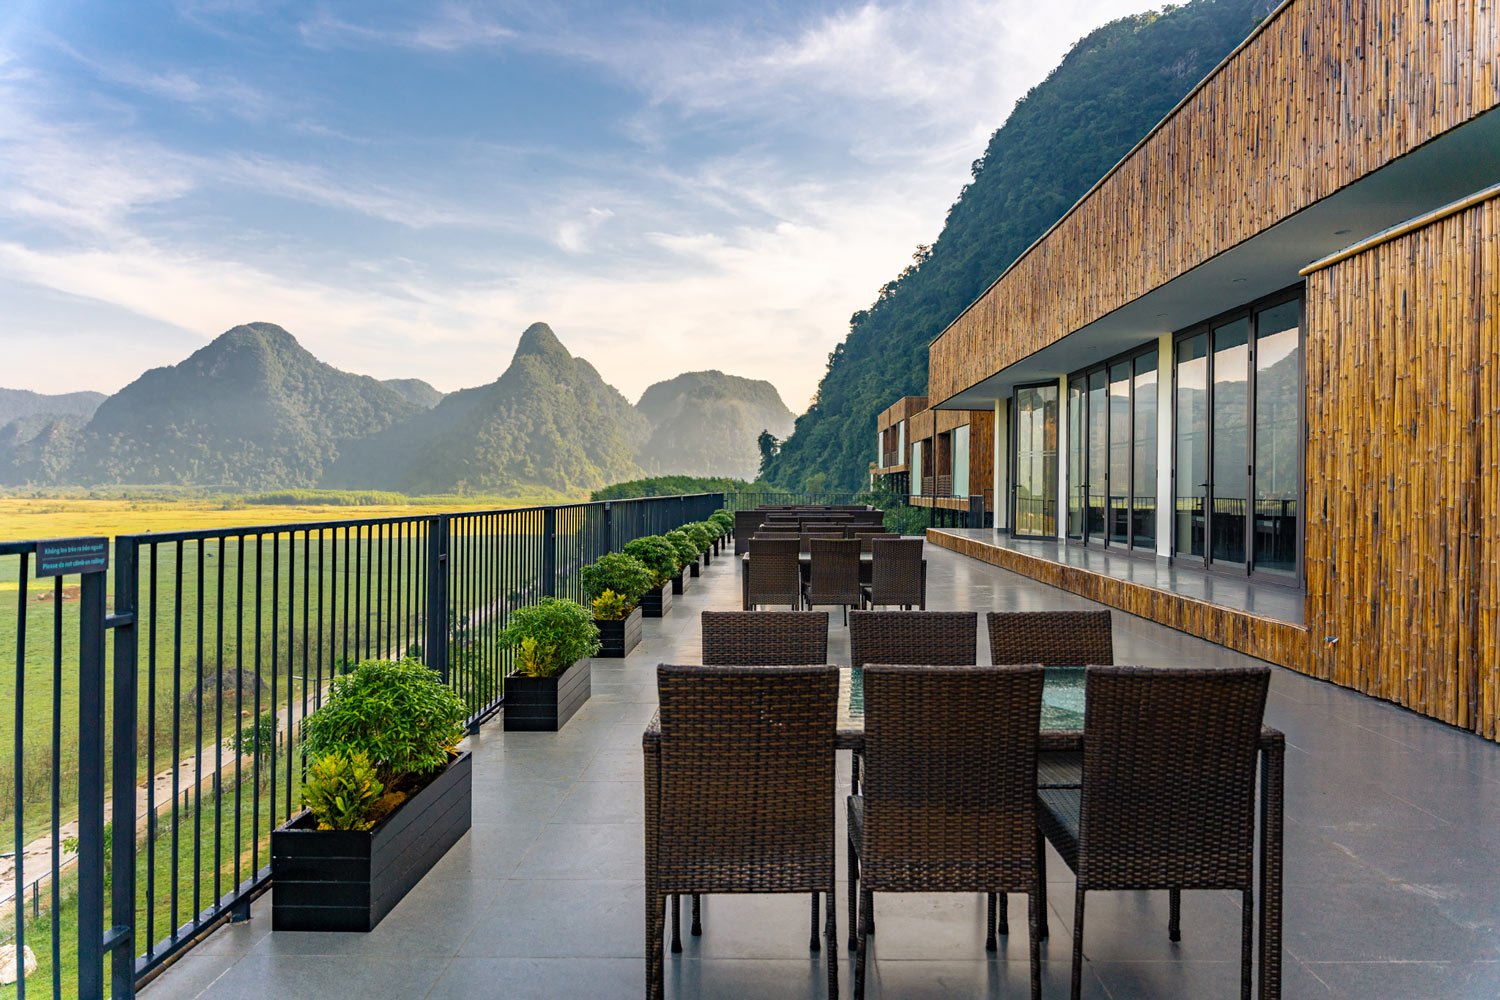 Nhà hàng Tú Làn Lodge - Từ nhà hàng, du khách có thể chiêm ngưỡng khung cảnh những cánh đồng trải dài và dãy núi hùng vĩ xa xa.